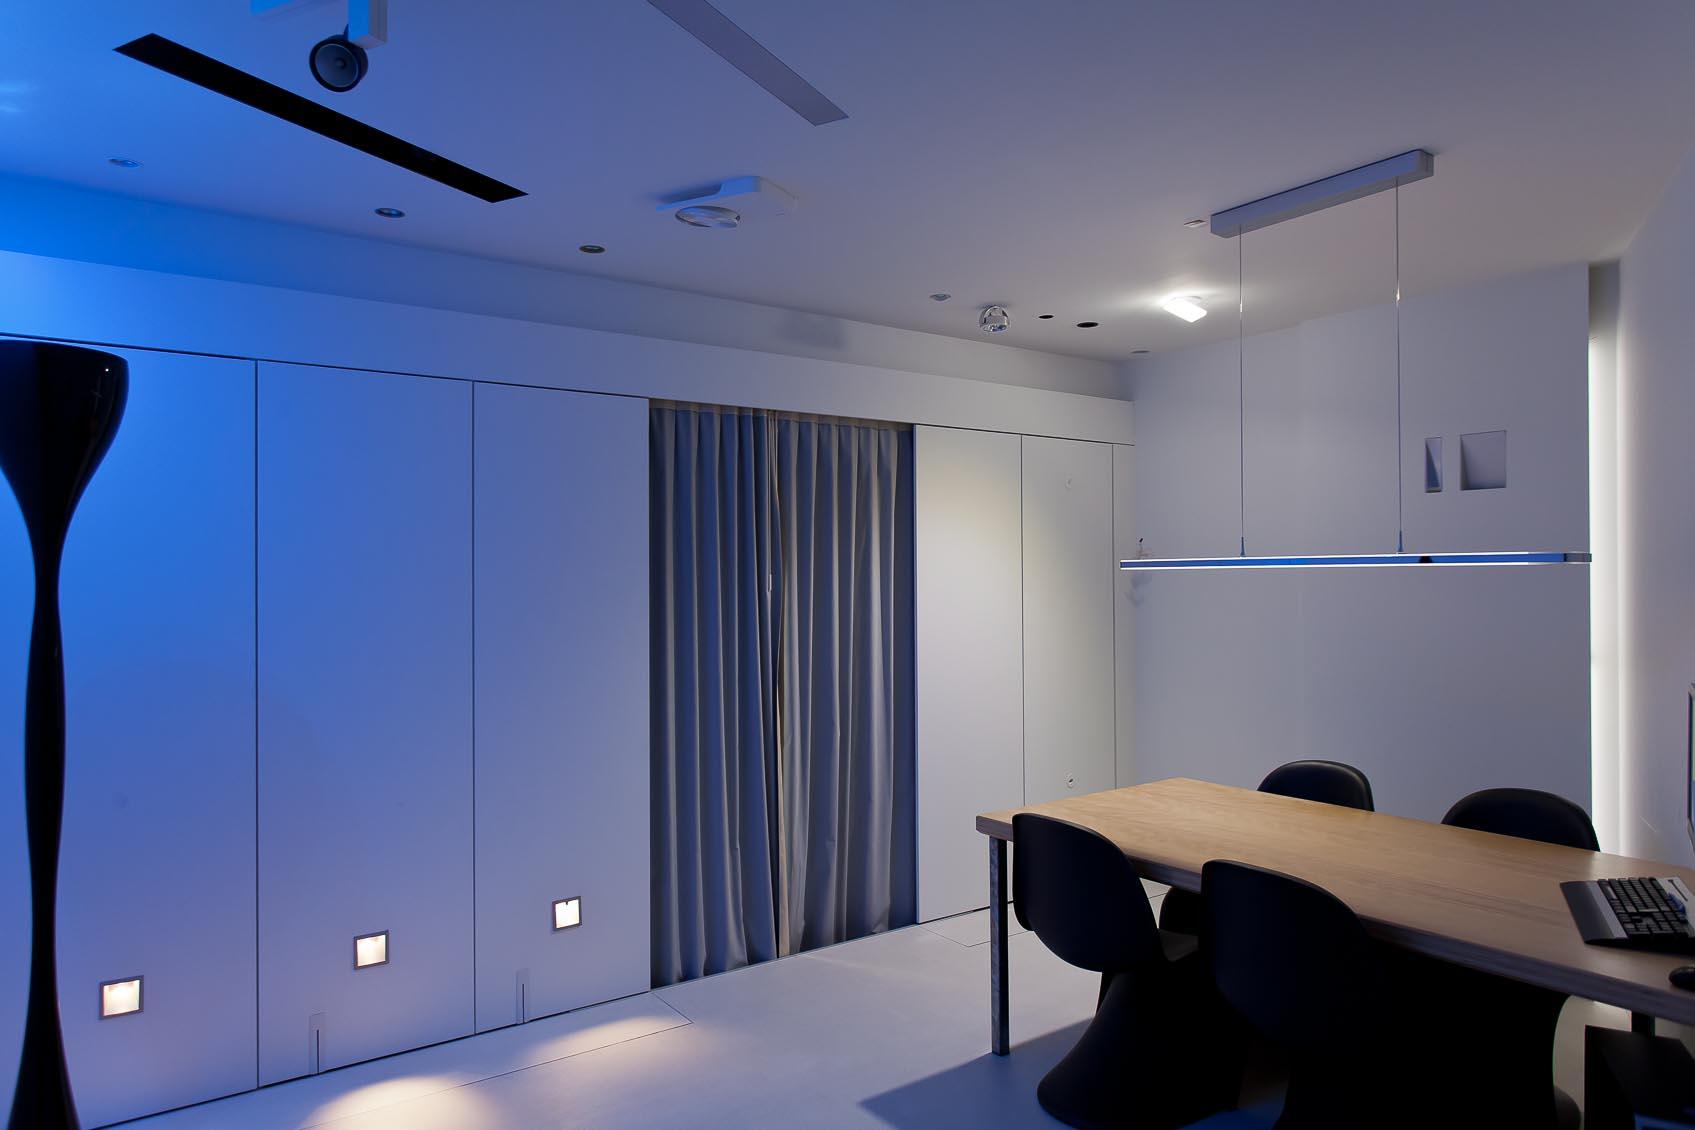 Beleef interieurverlichting in onze design lichtstudio1